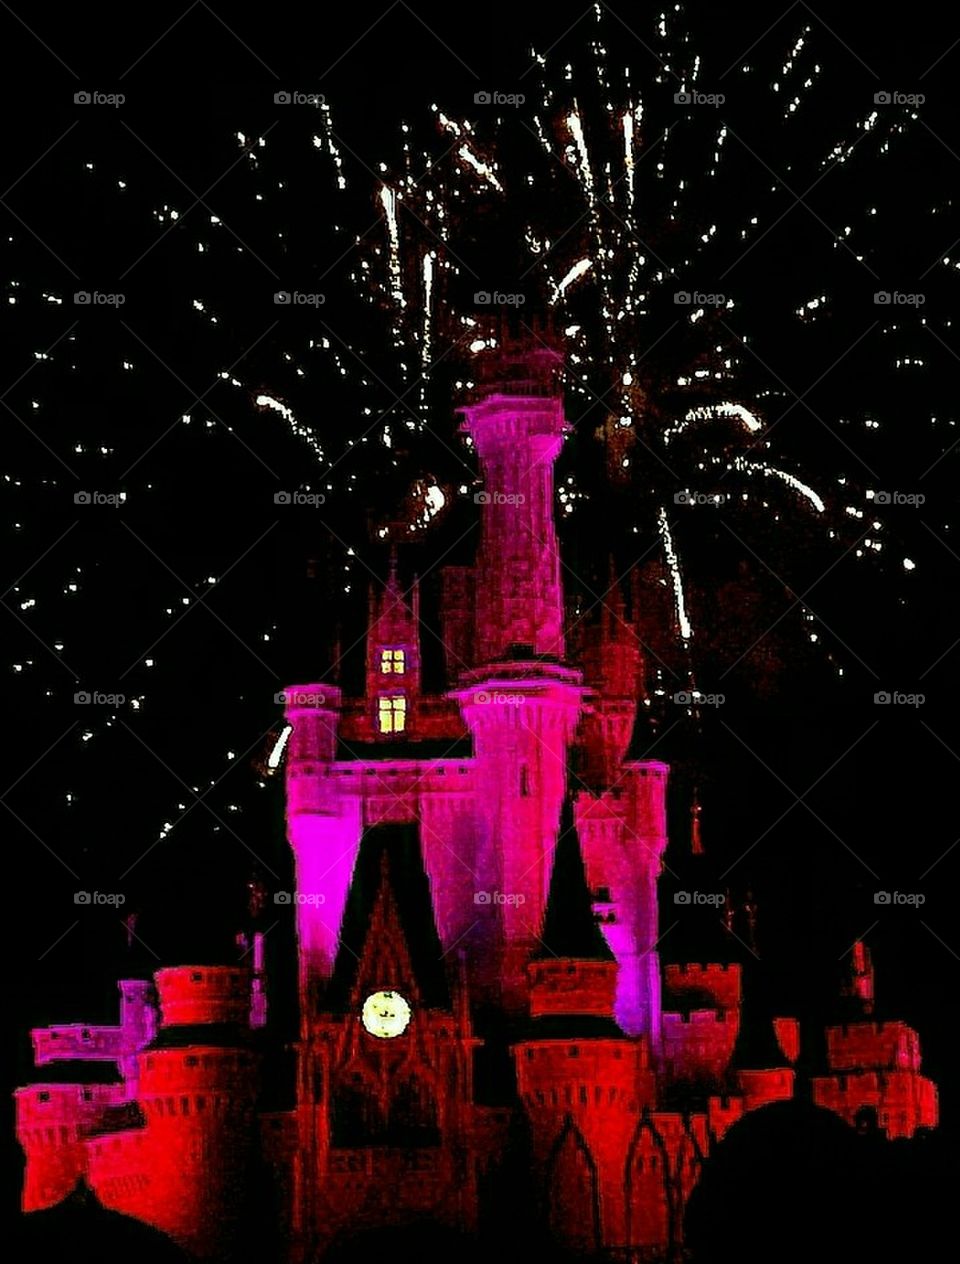 Disney Cinderella's Castle